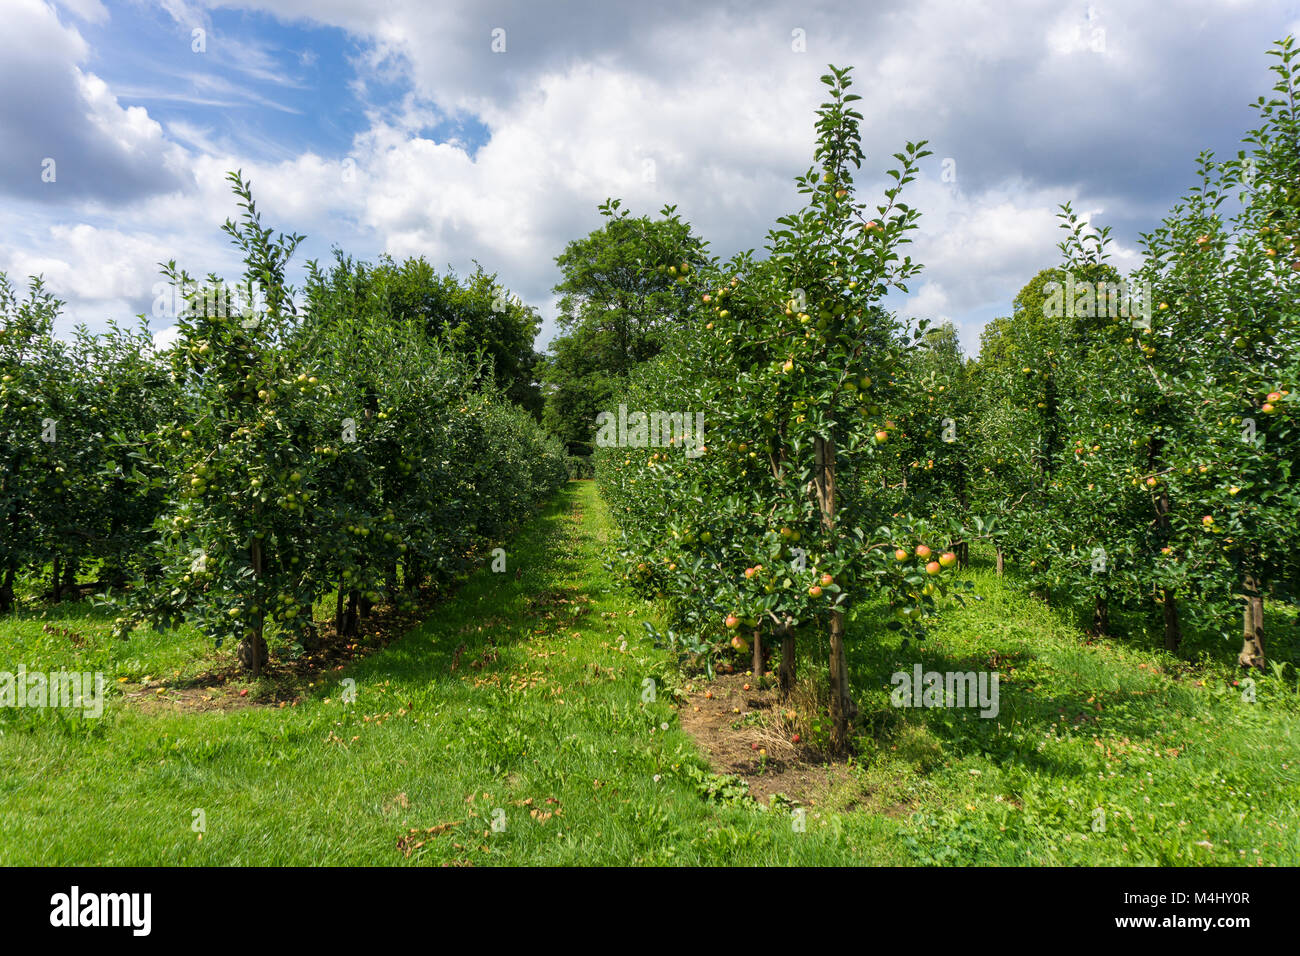 apple trees Stock Photo